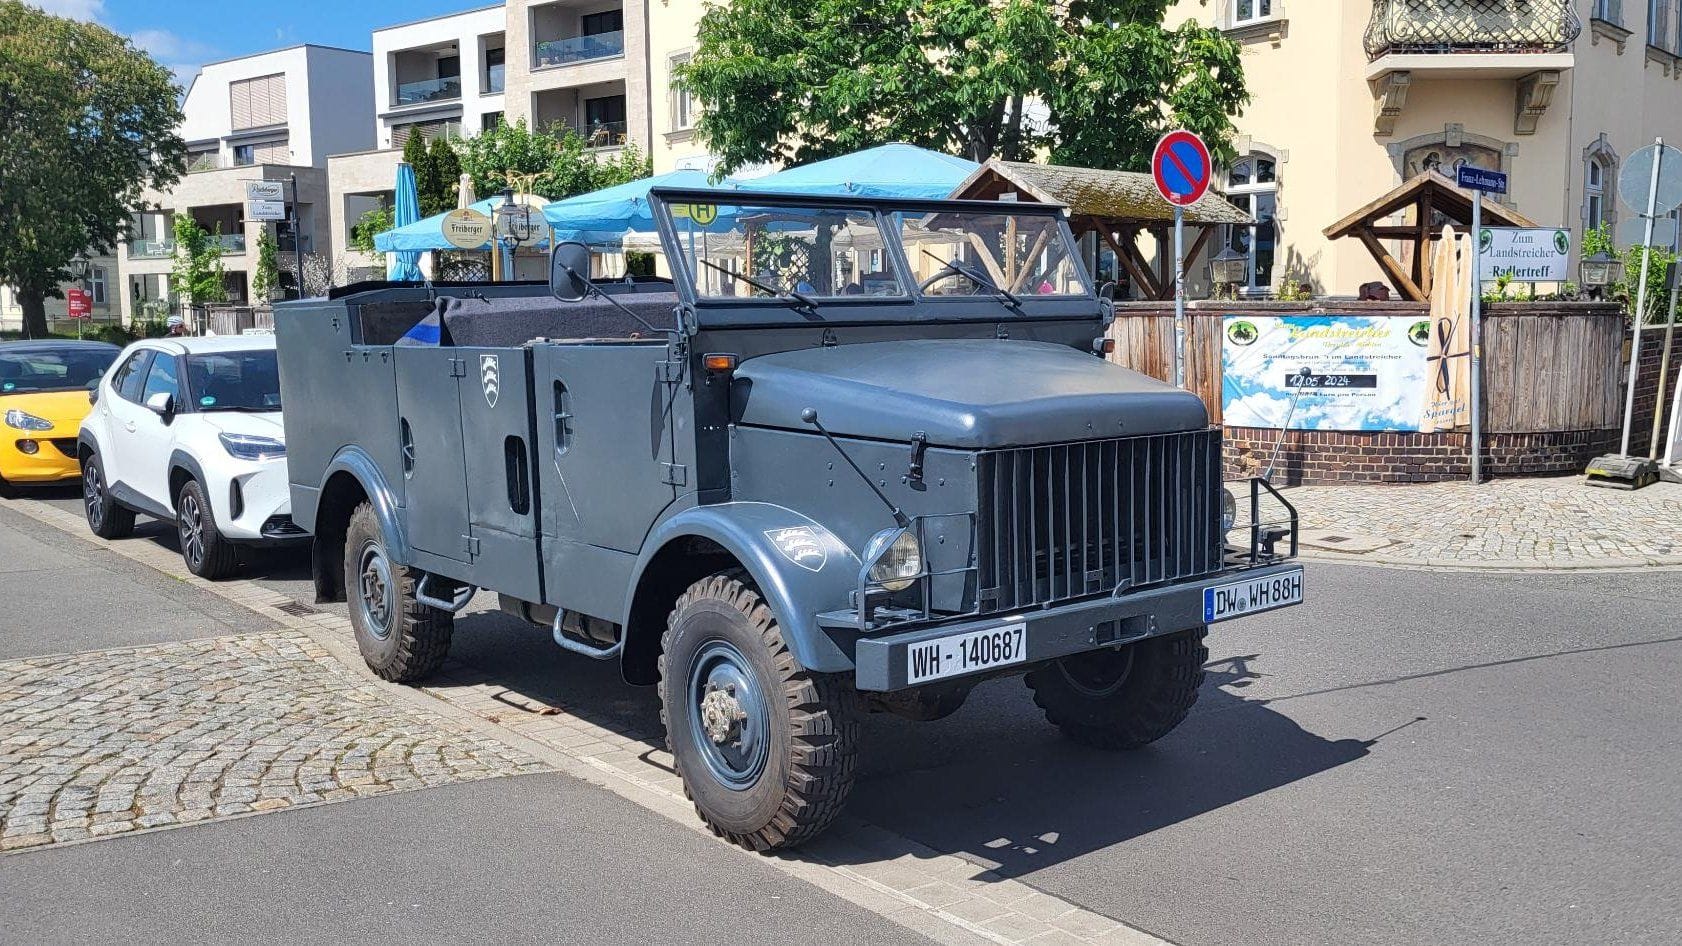 Dresden: Hitlergruß und Reichsflagge im Militärwagen – Personen ermittelt